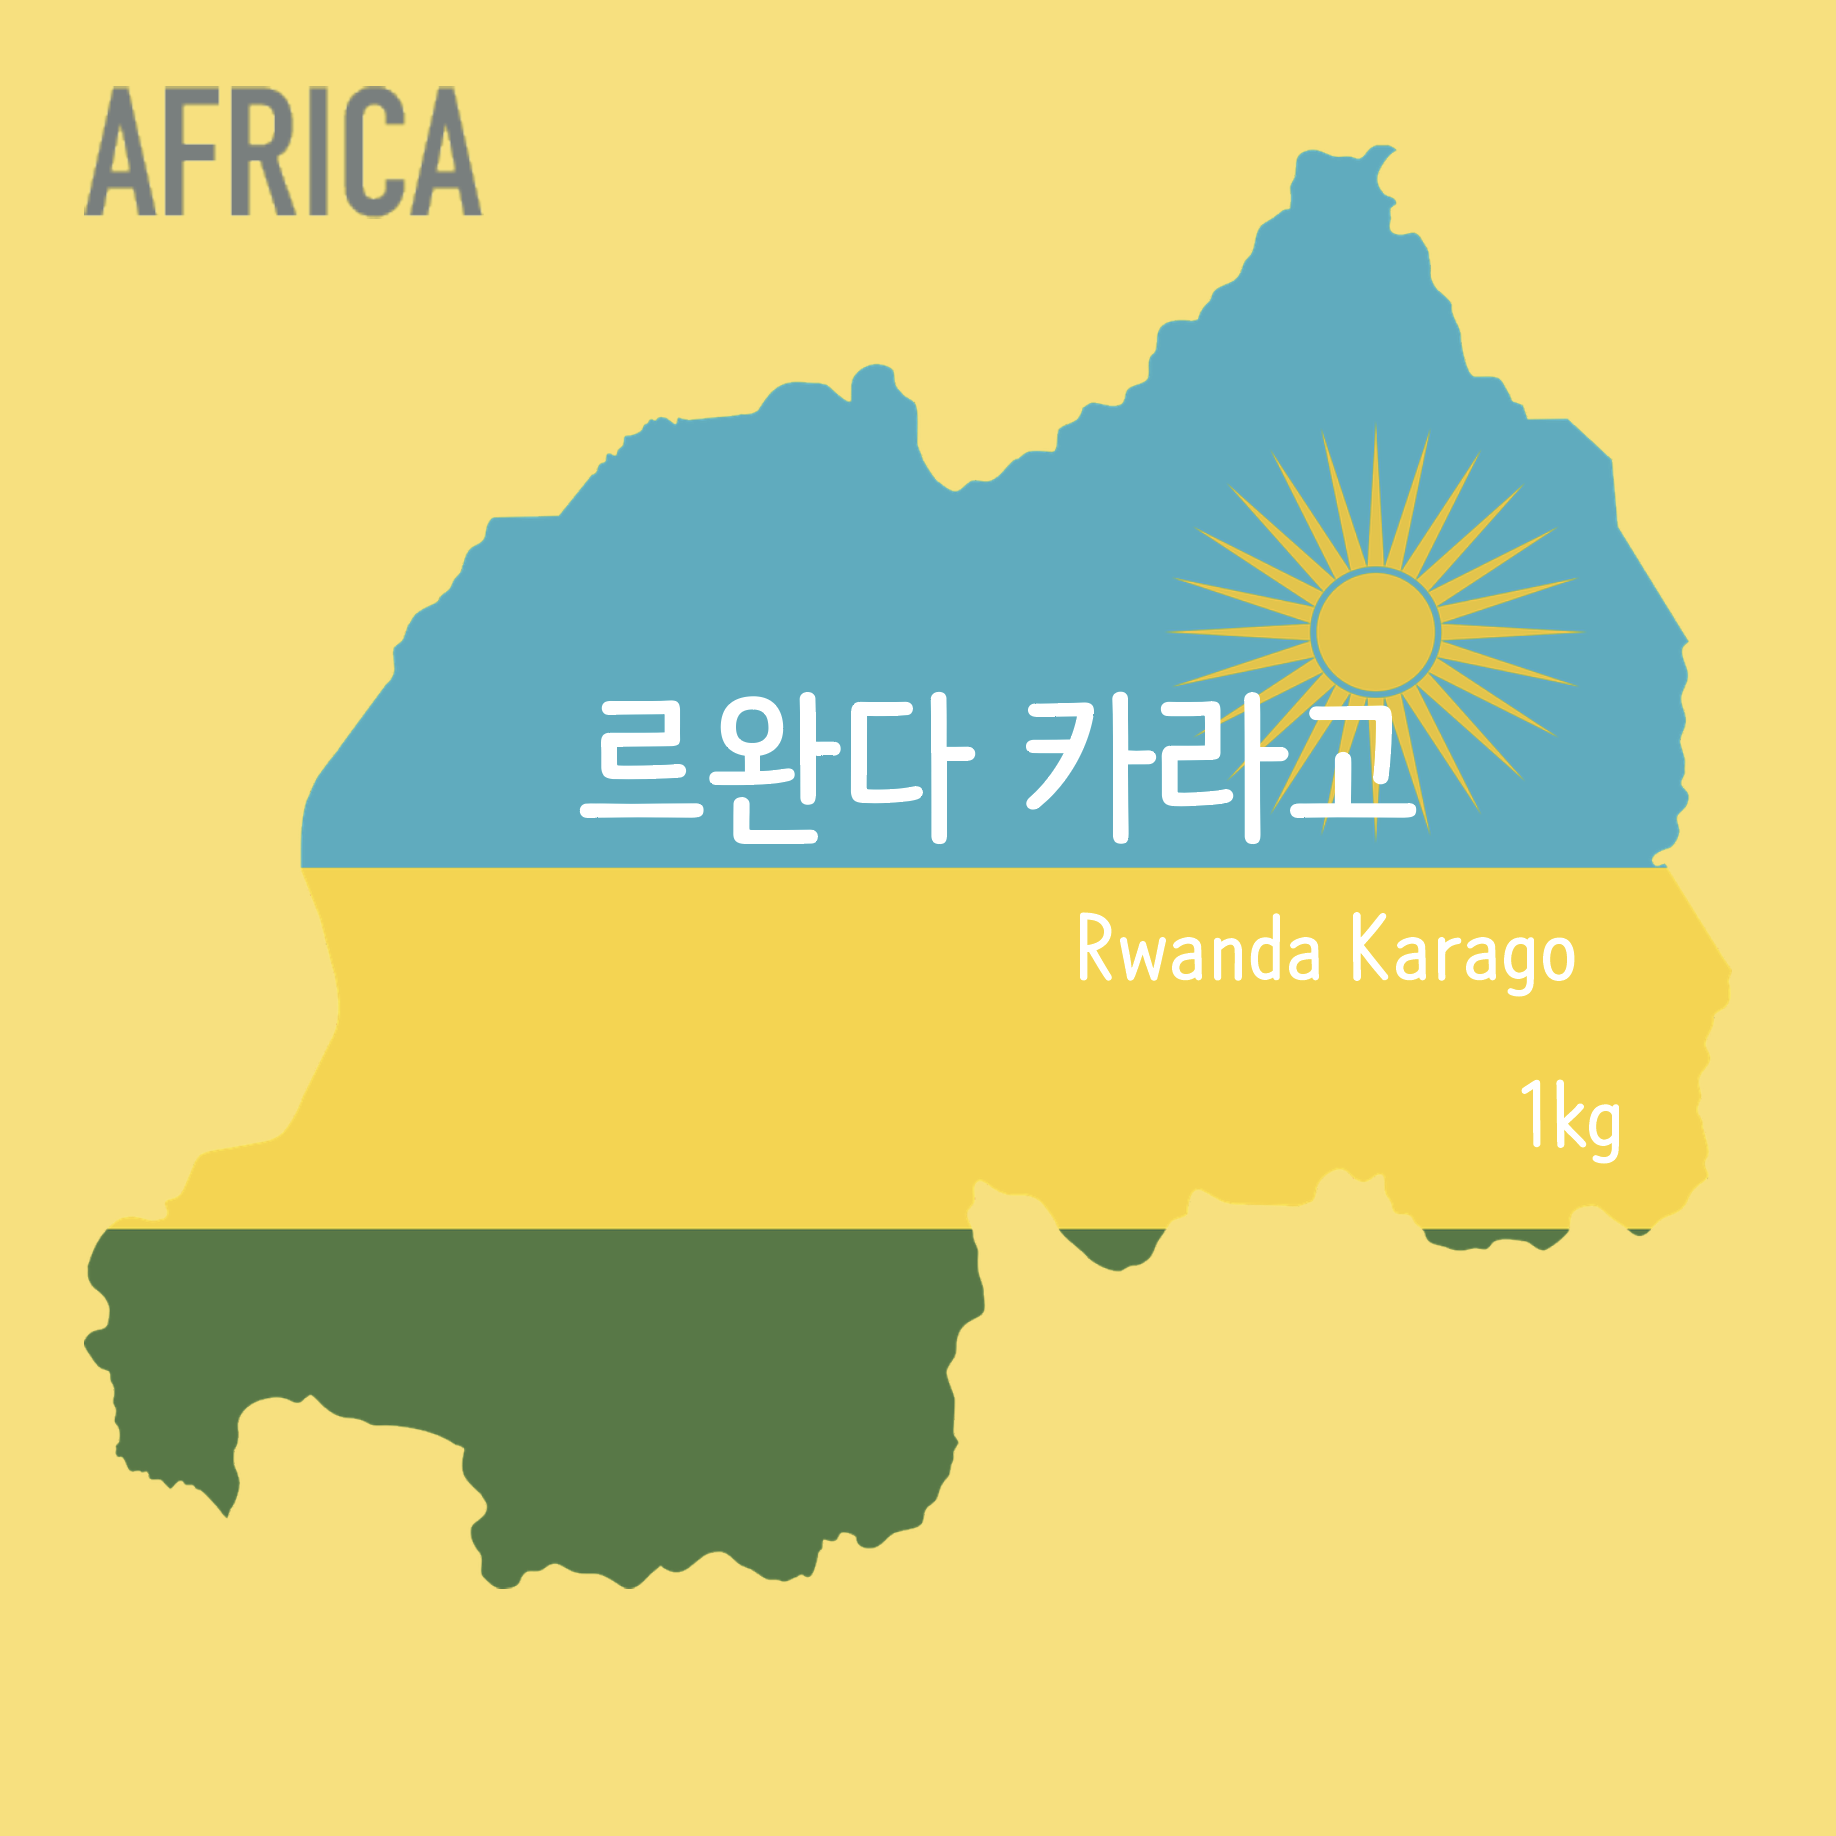 [생두] 르완다 카라고 (Rwanda Karago) 1kg